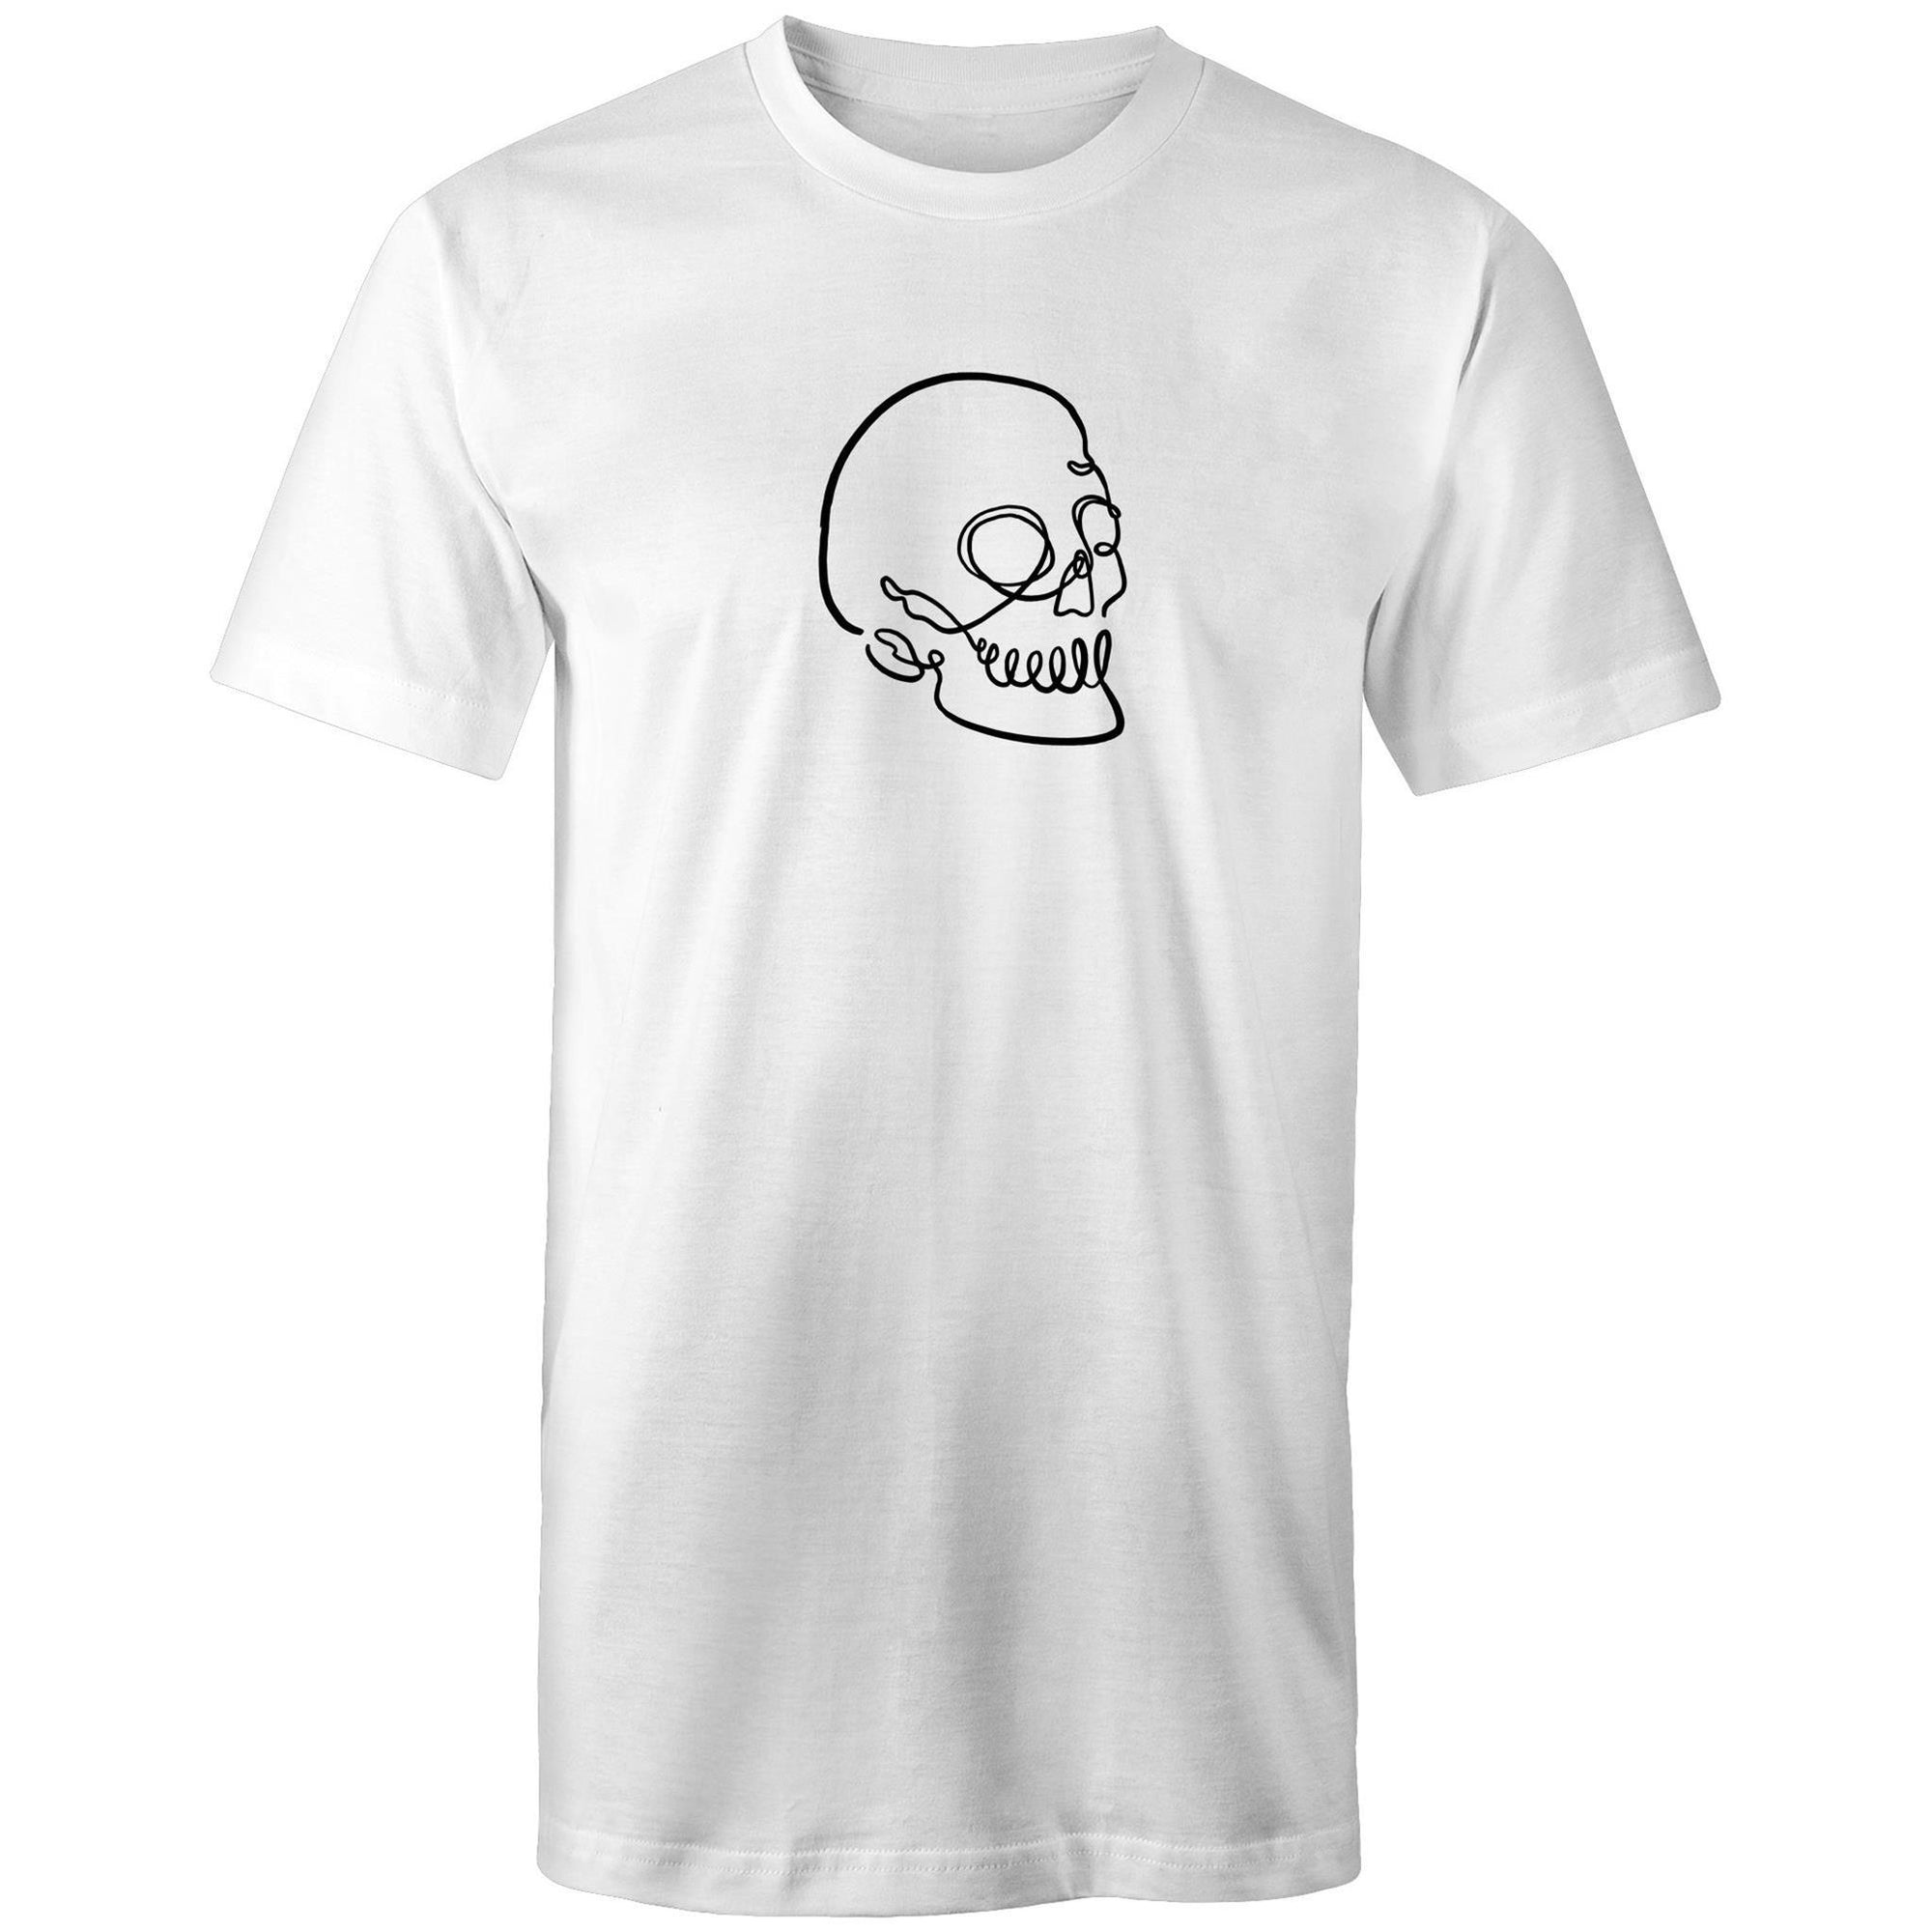 Men's Skull Line Art T-shirt